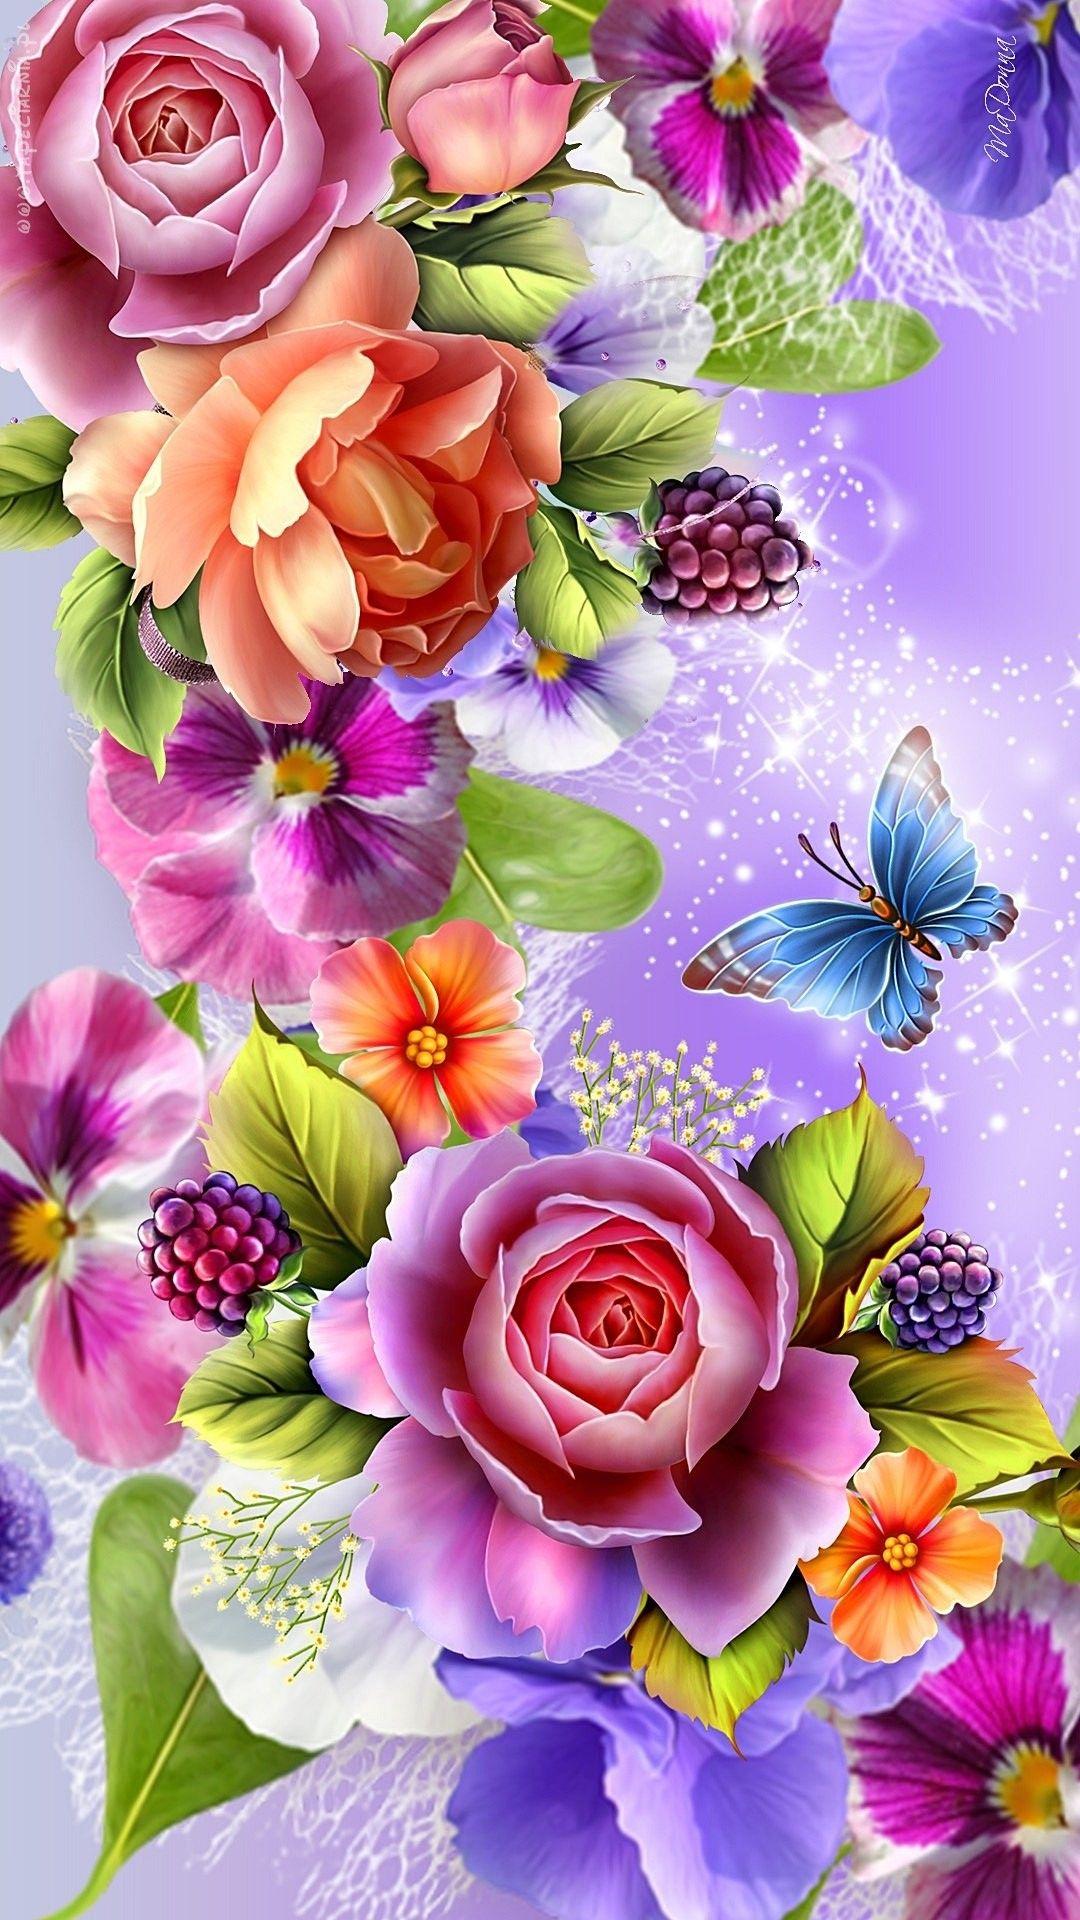 Fantasztikus színes art virágok. Wallpaper. By Artist Unknown